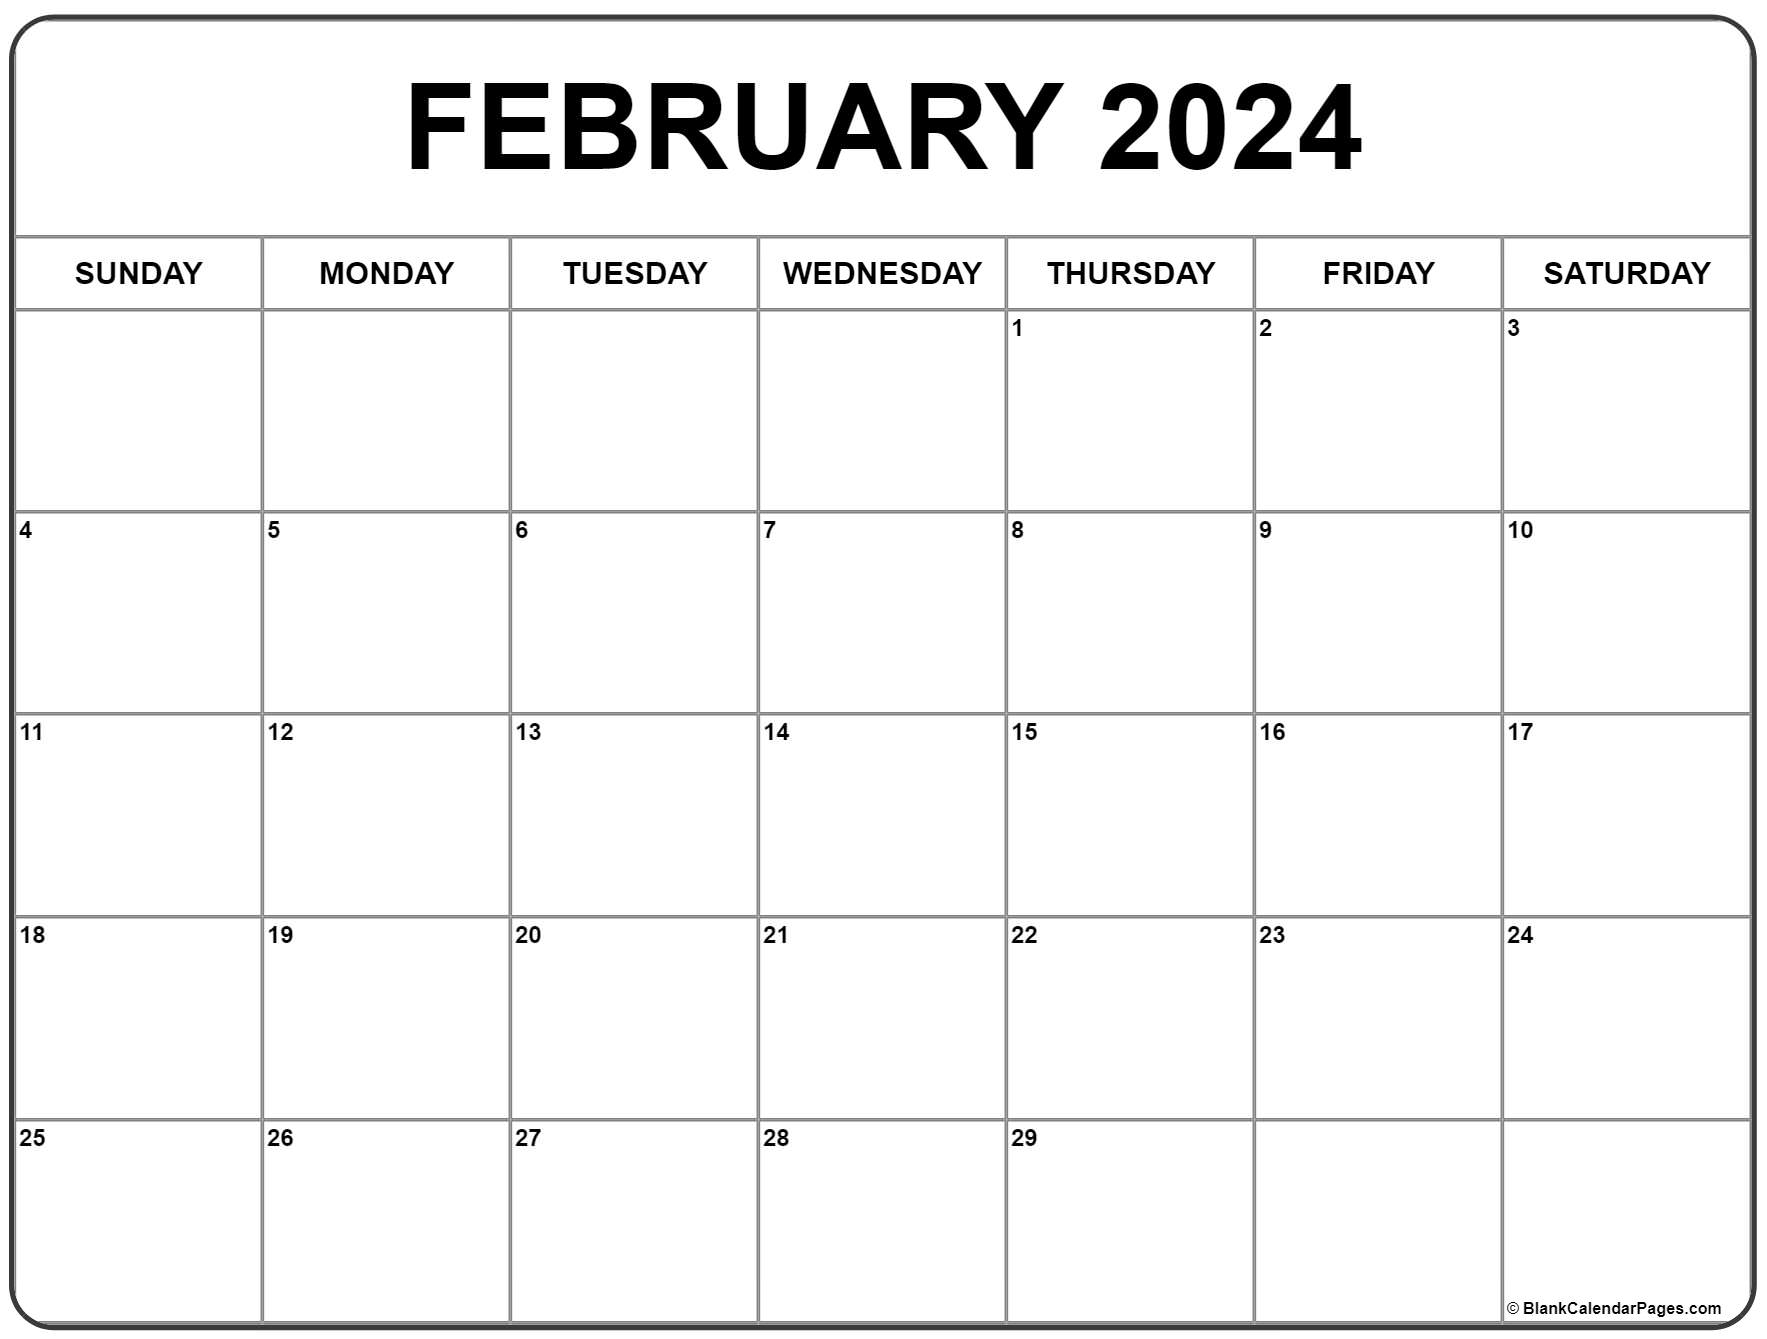 February 2024 Calendar | Free Printable Calendar for Feb 2024 Calendar Free Printable